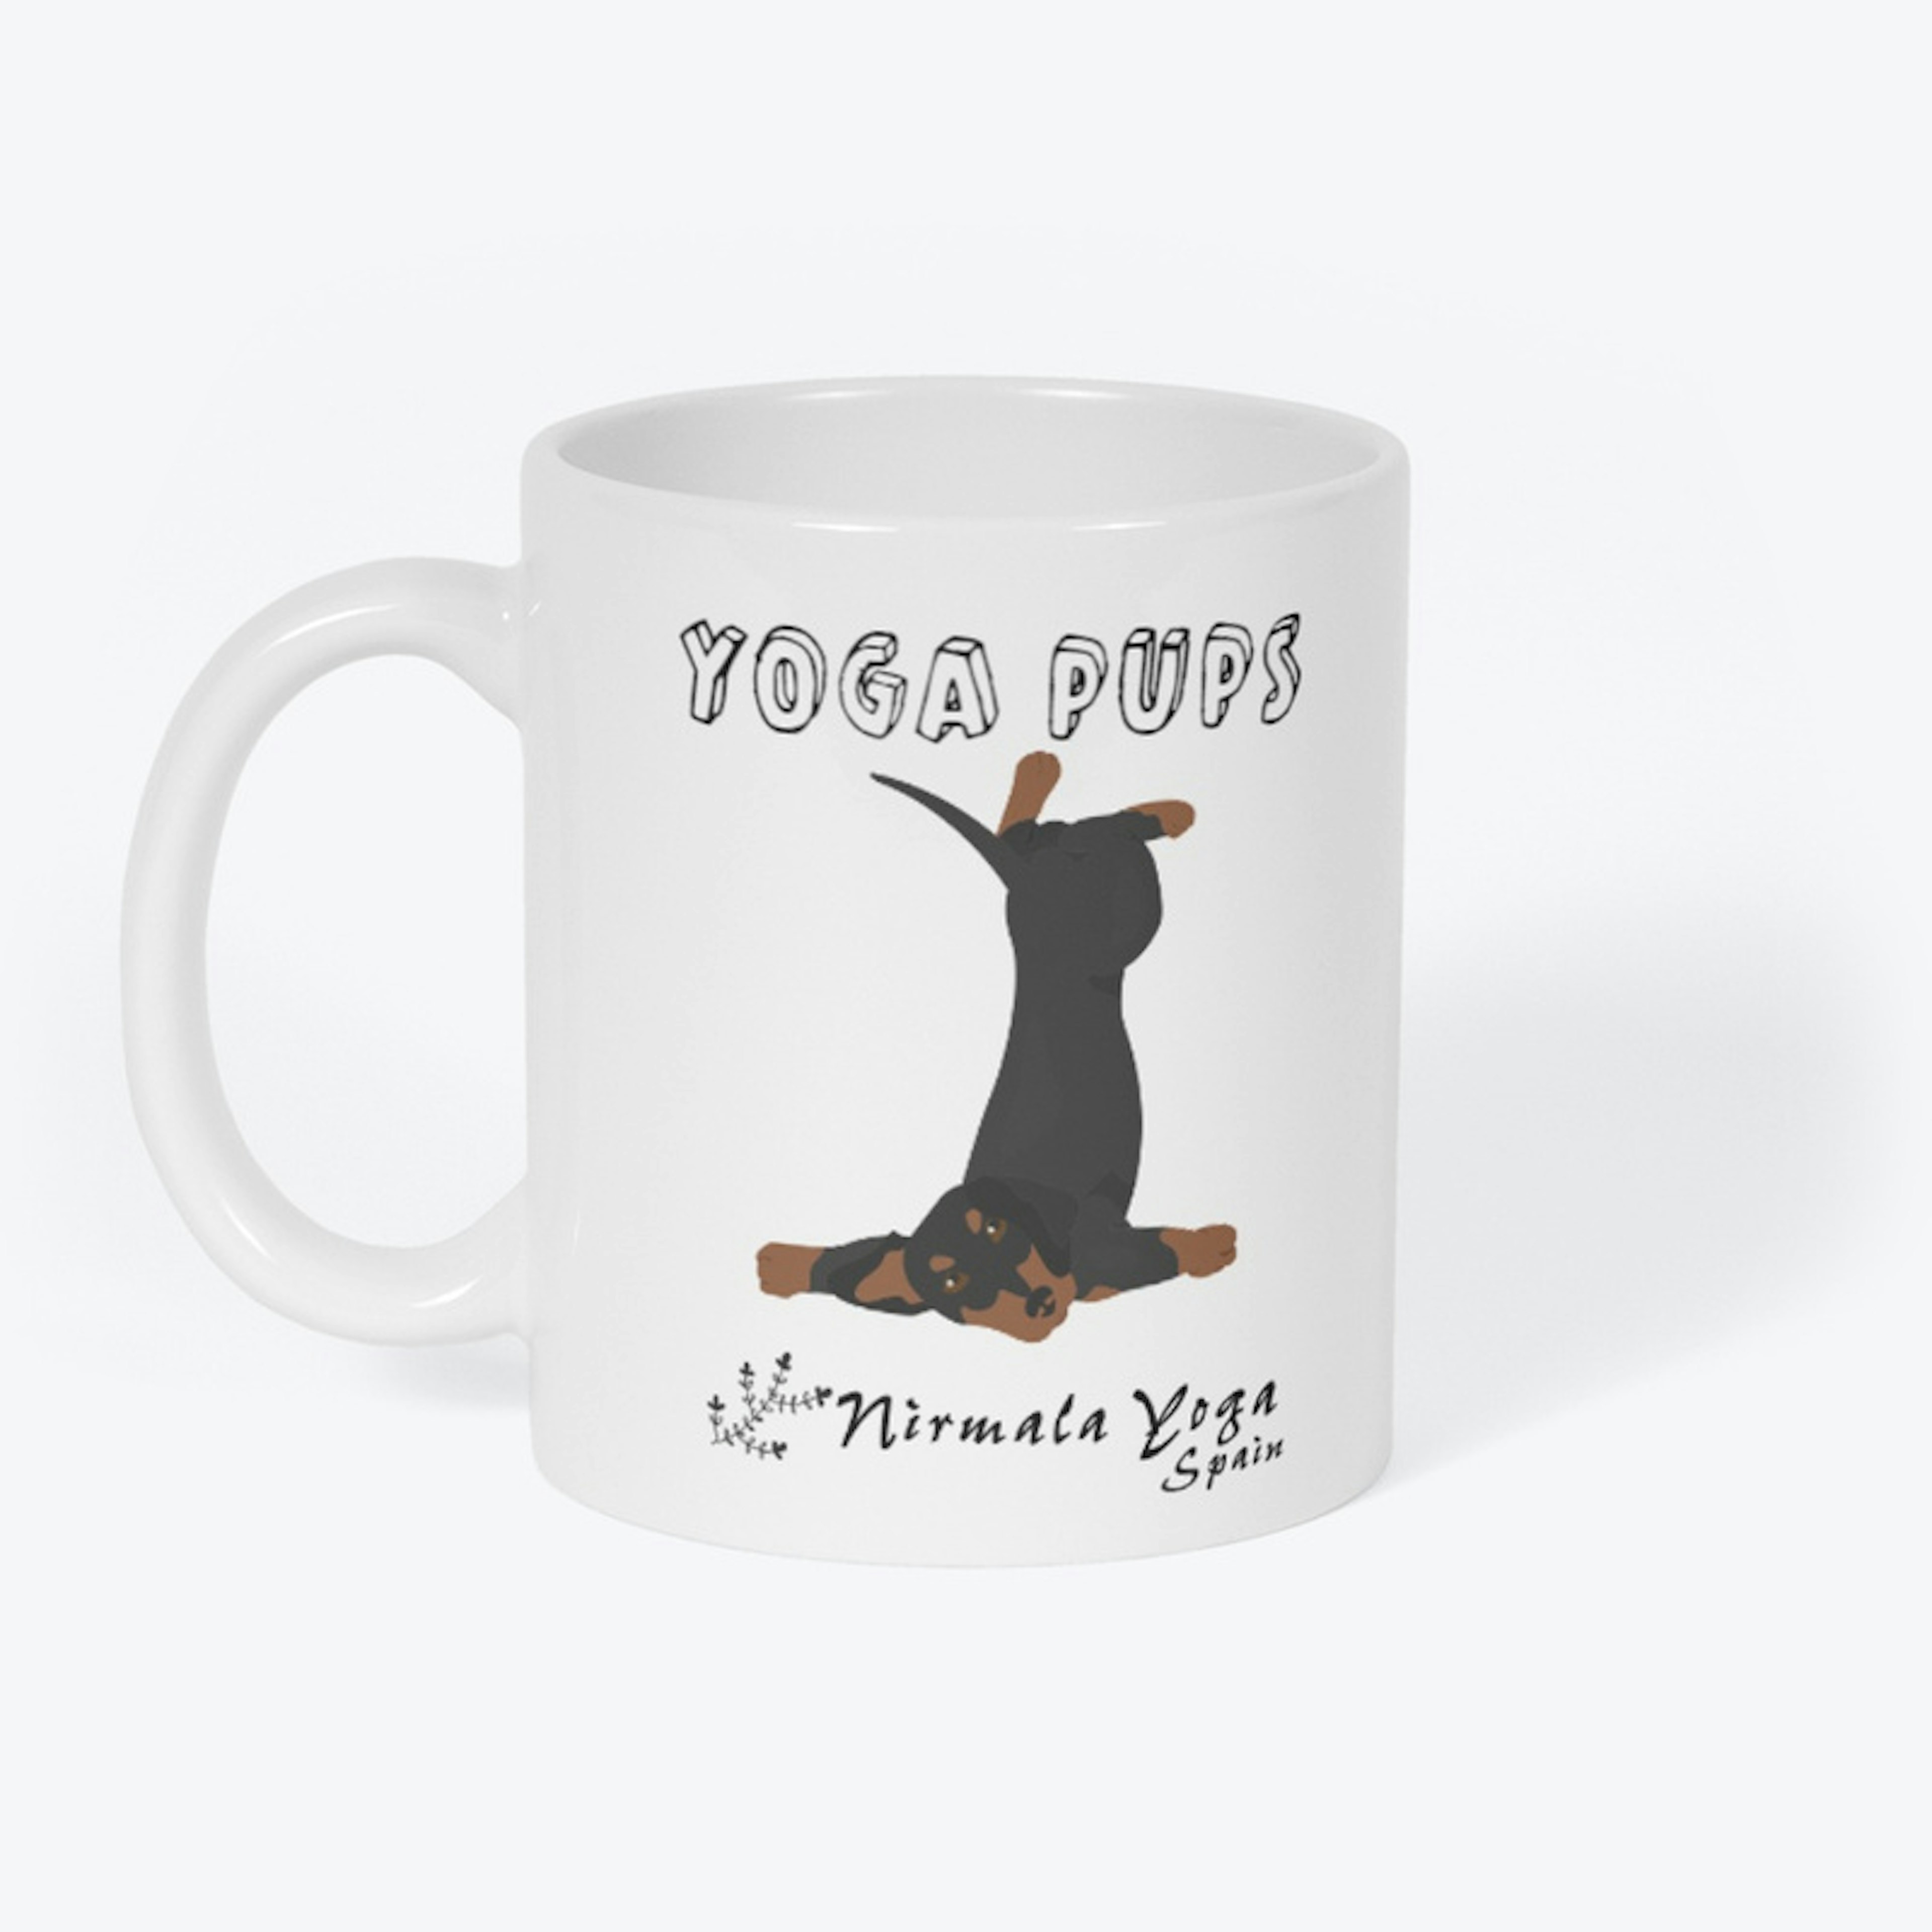 Dachshund "Yoga Pups" Mug